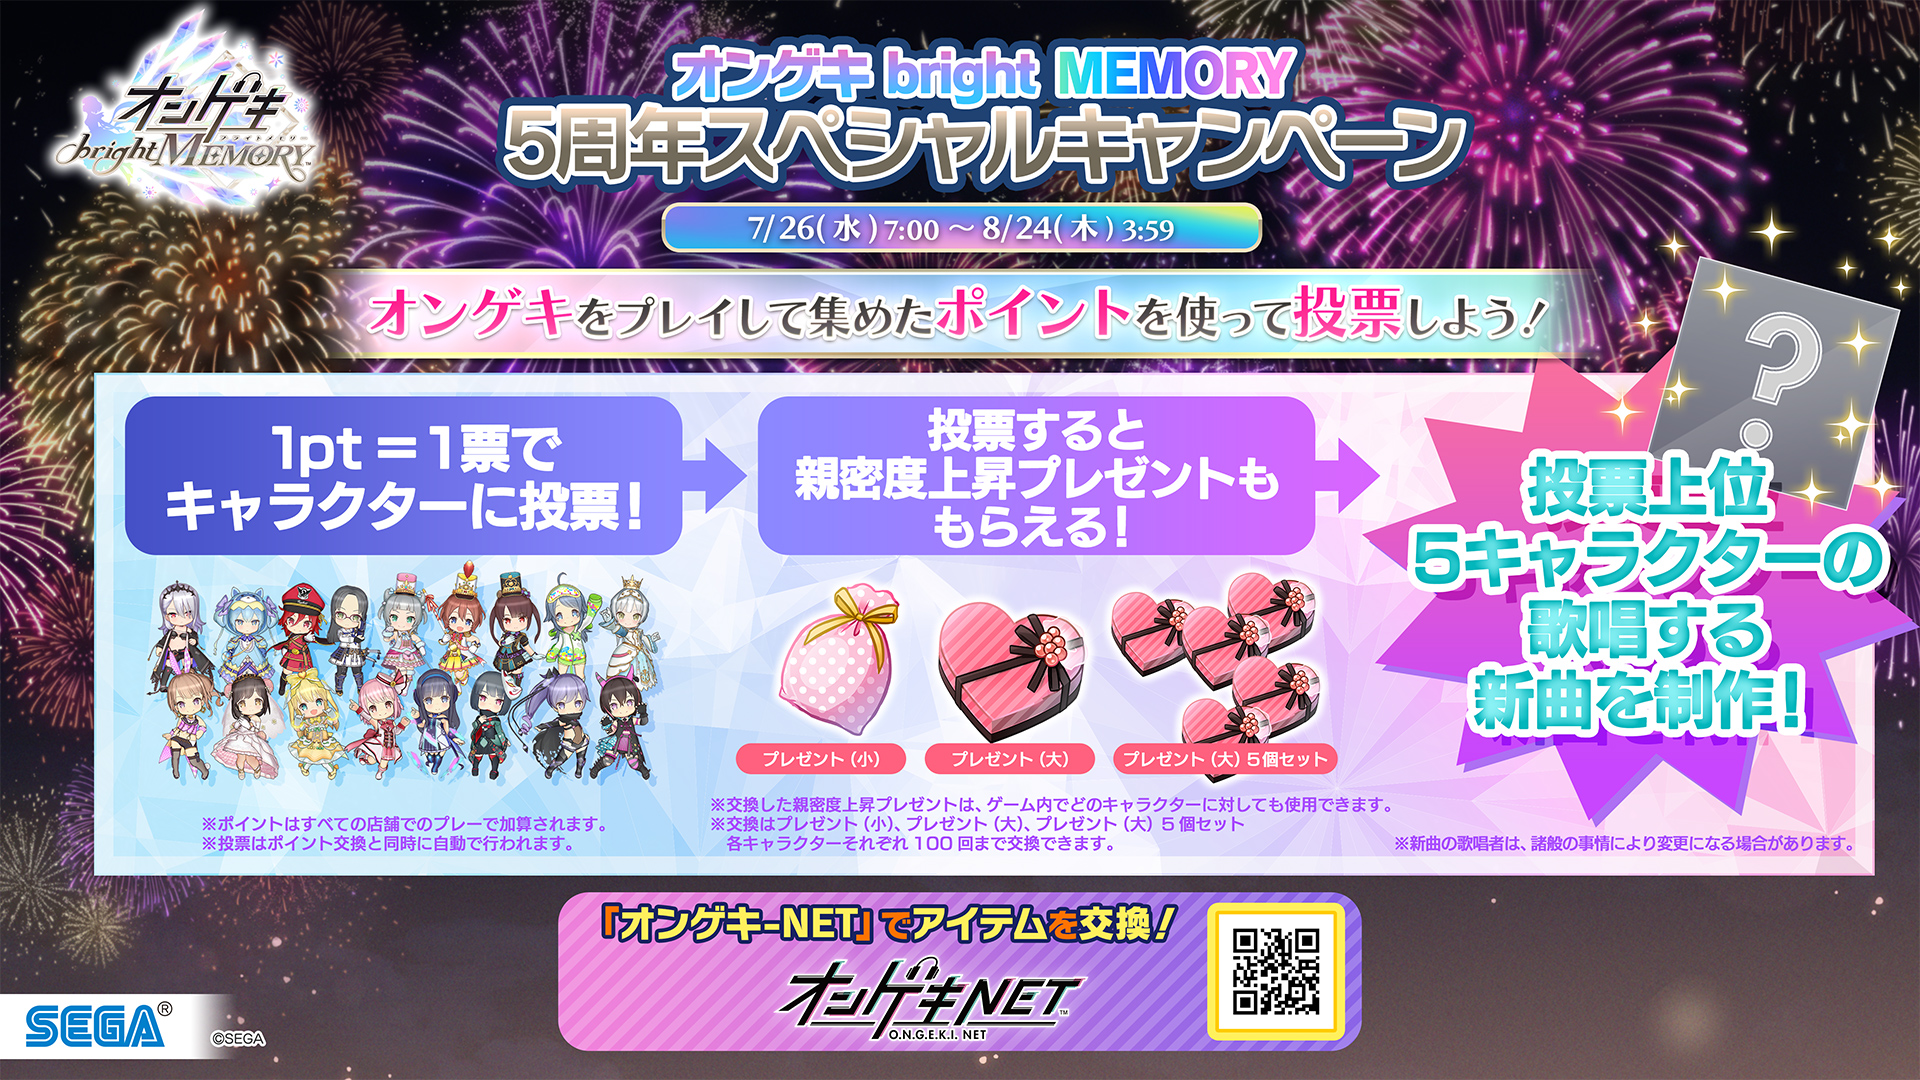 7/26(水)「オンゲキbright MEMORY 5周年スペシャルキャンペーン」開始！